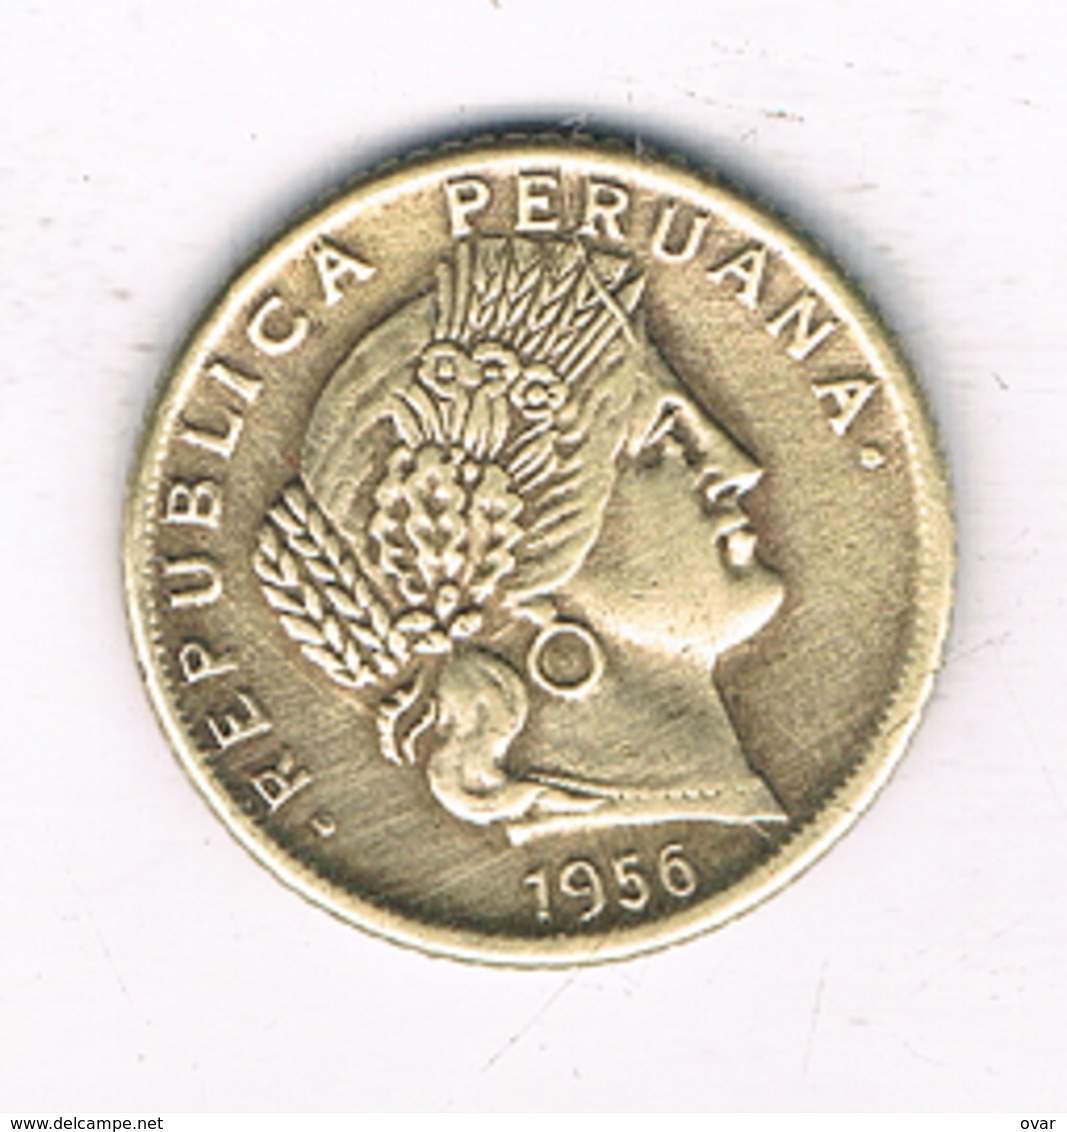 5 CENTAVOS 1956 PERU /2266/ - Peru